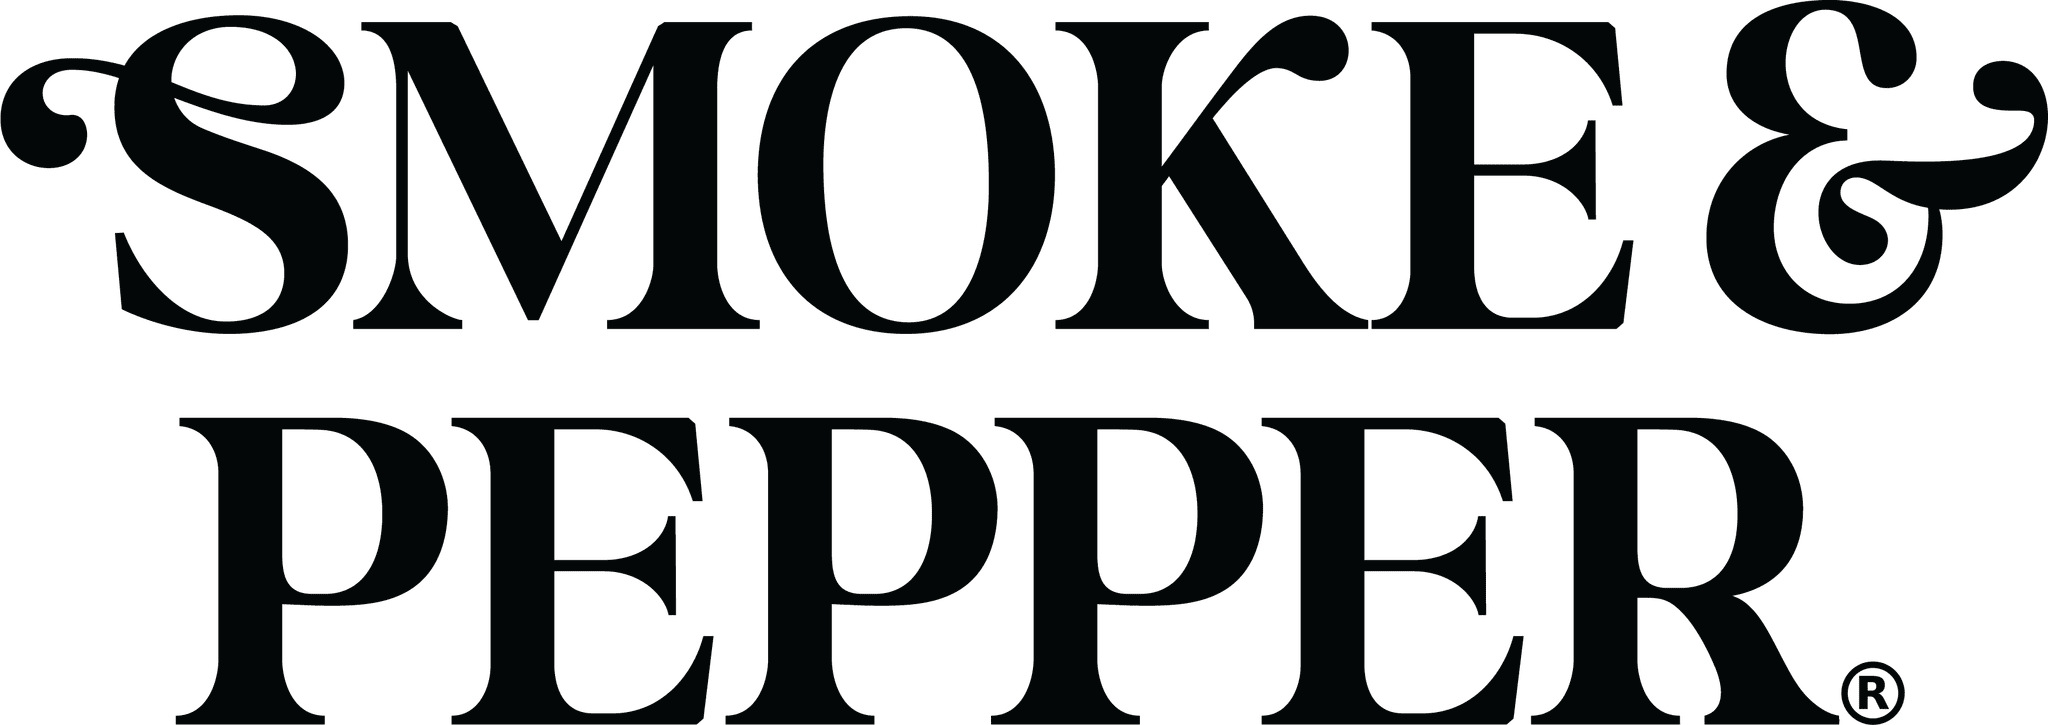 Logo Smoke & Pepper.jpg